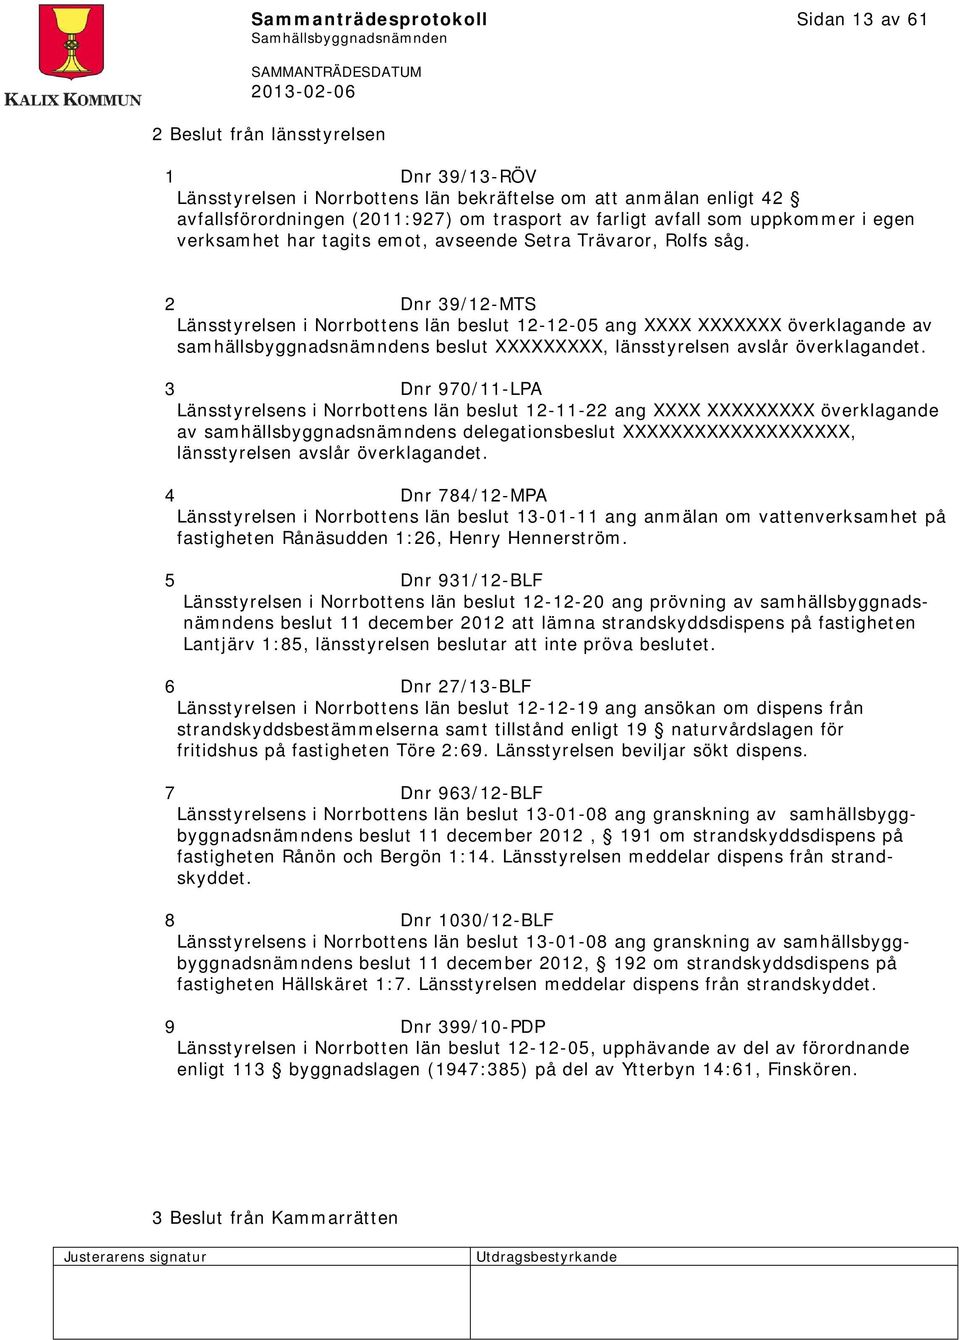 2 Dnr 39/12-MTS Länsstyrelsen i Norrbottens län beslut 12-12-05 ang XXXX XXXXXXX överklagande av samhällsbyggnadsnämndens beslut XXXXXXXXX, länsstyrelsen avslår överklagandet.